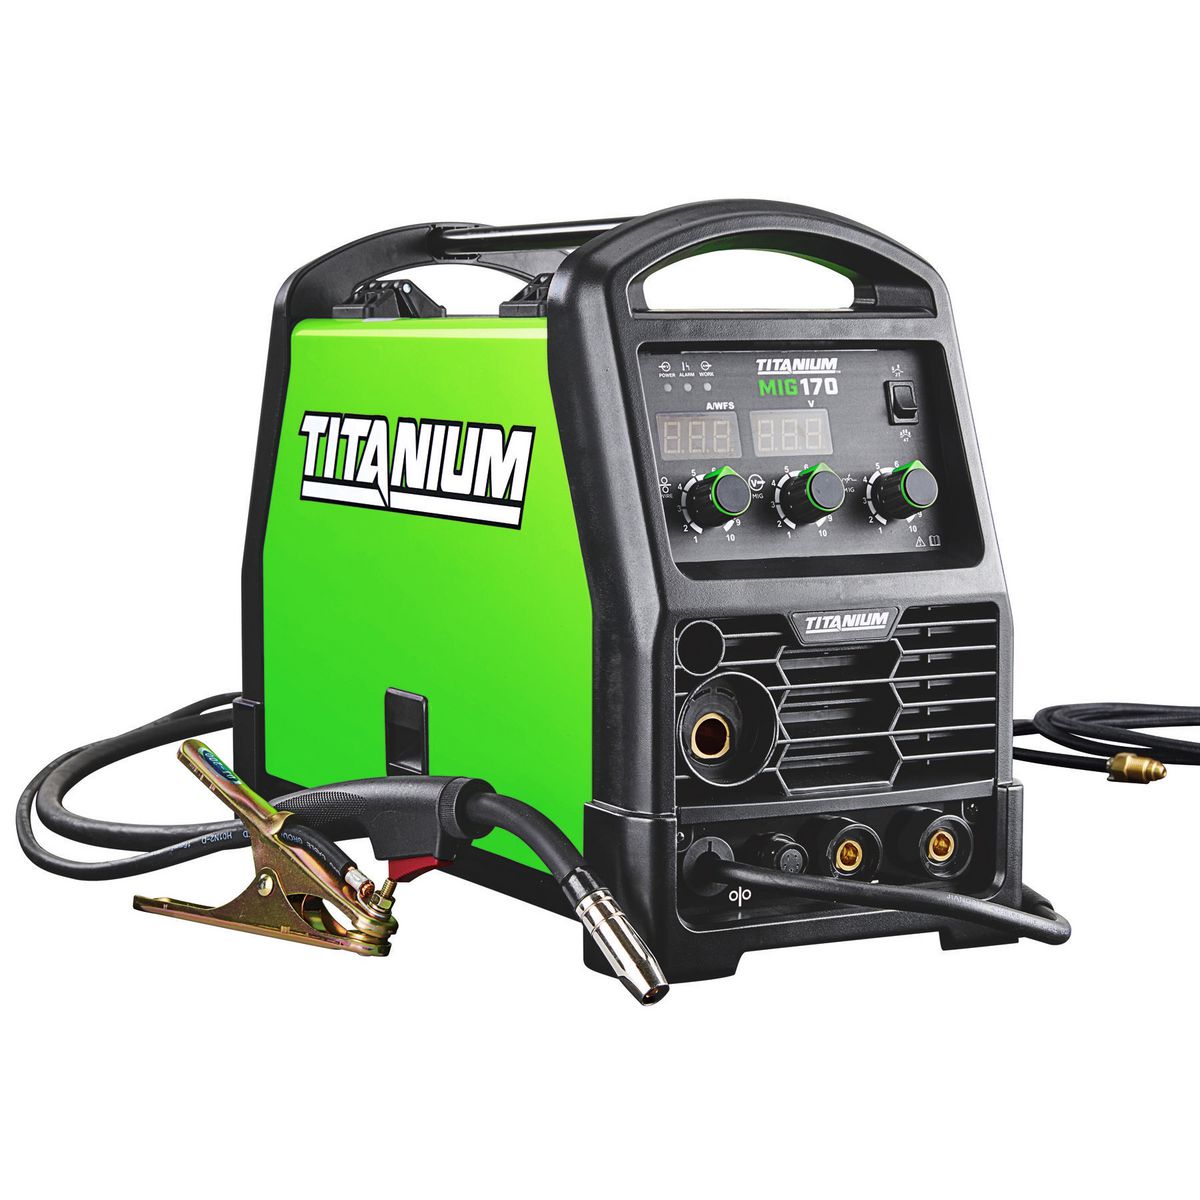 TITANIUM MIG 170 Professional Welder with 120/240 Volt Input - Item 64805